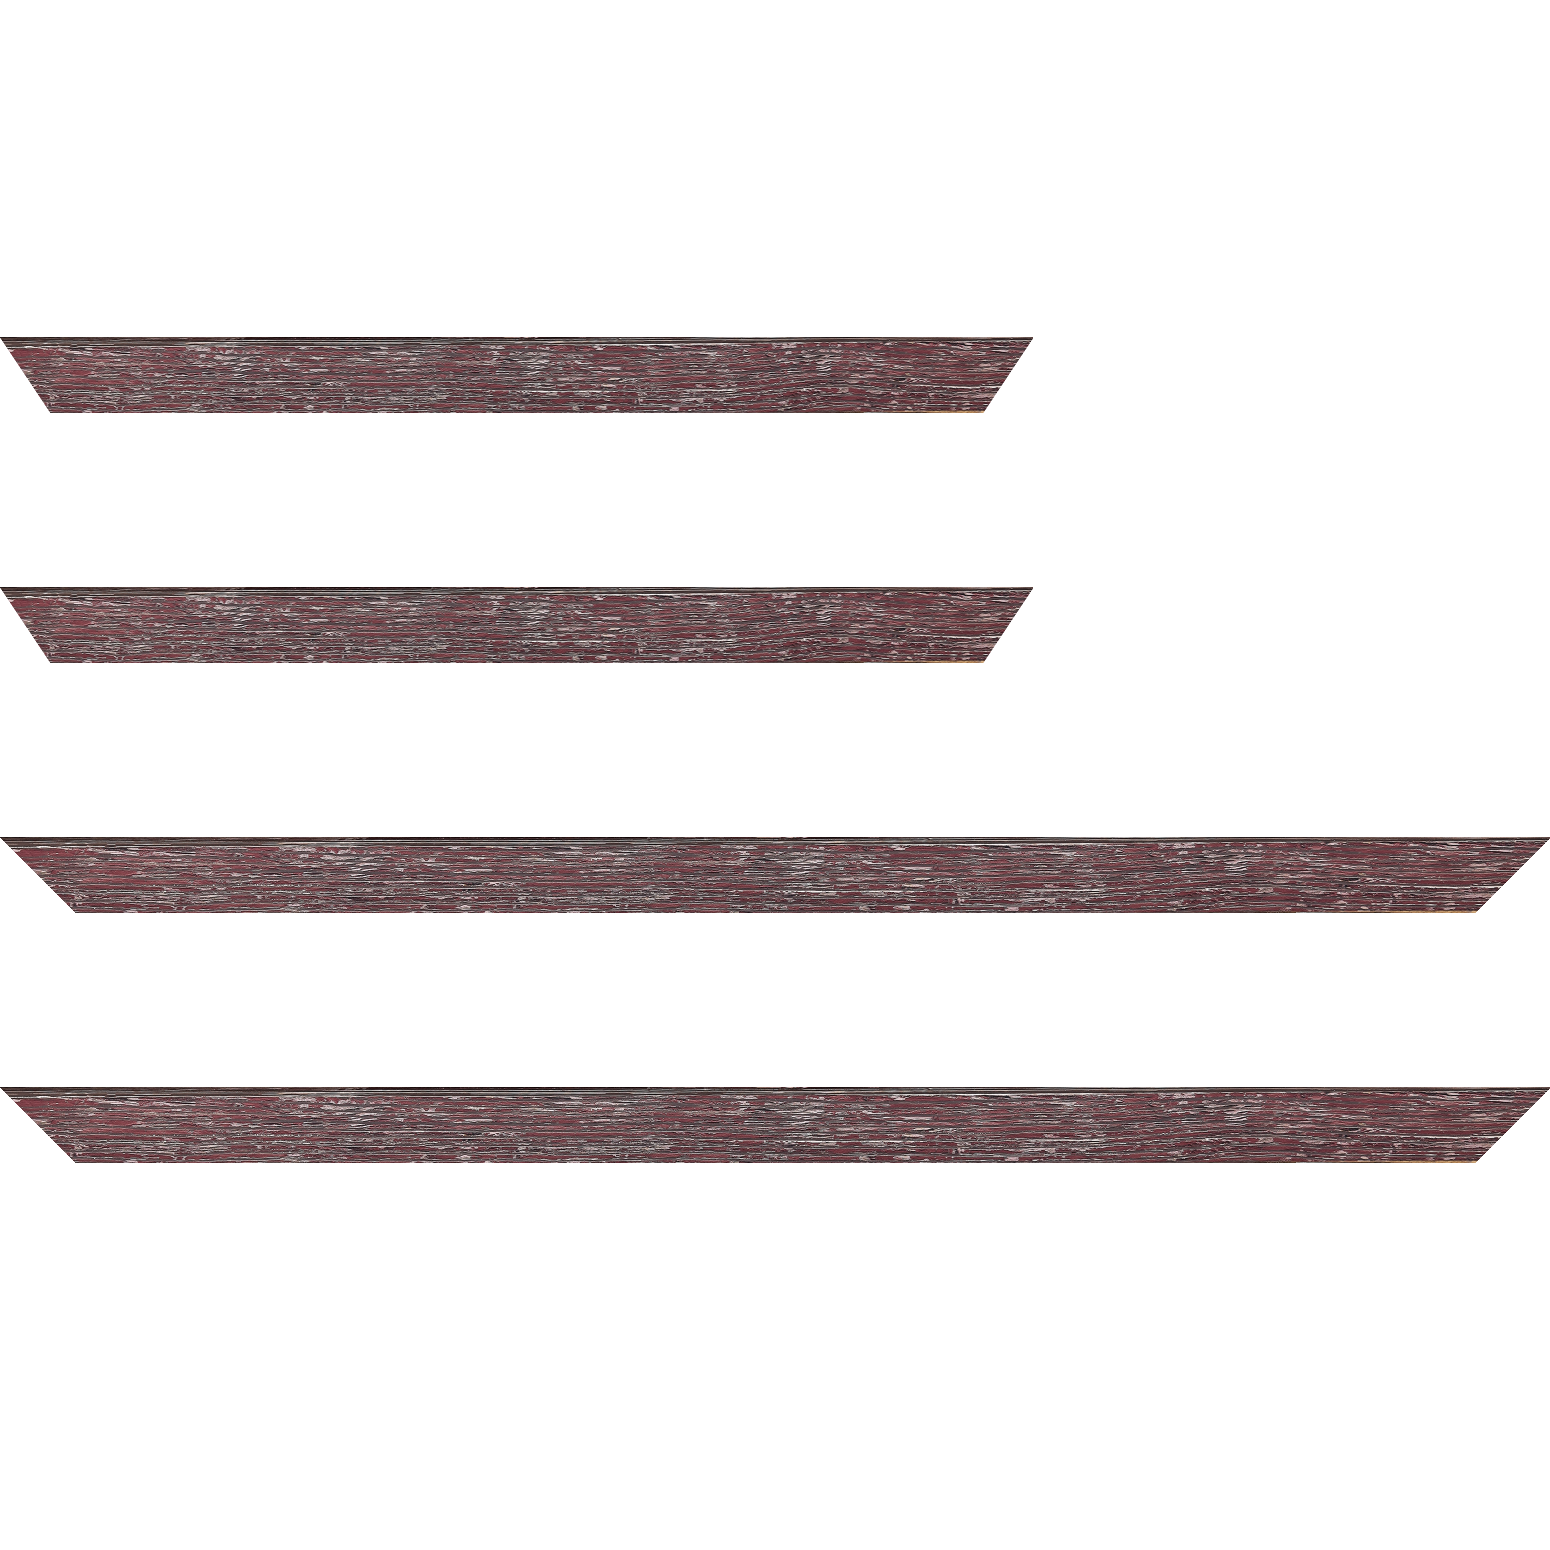 Baguette bois profil arrondi en pente plongeant largeur 2.4cm couleur framboise finition veinée, reflet argenté - 34x40